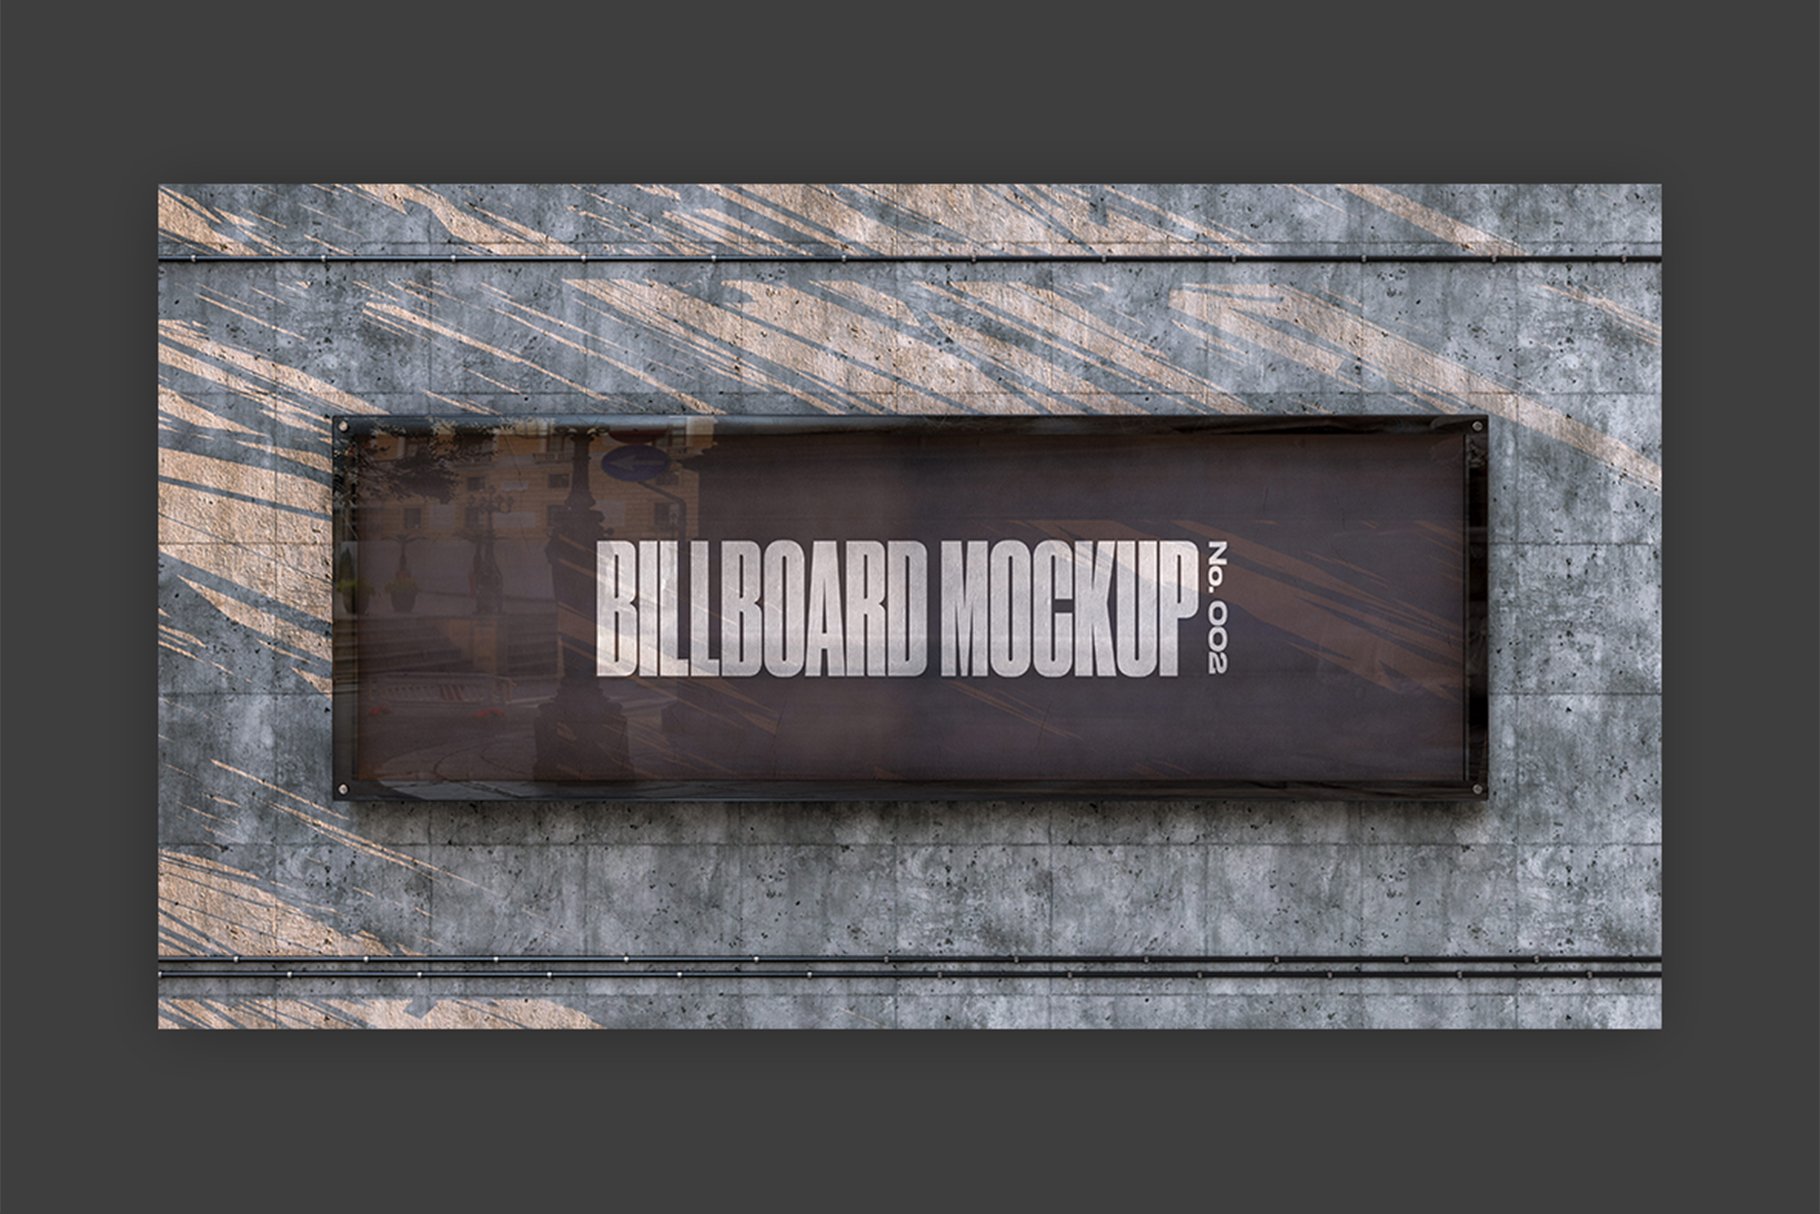 Wall Billboard Mockup - No. 002 preview image.